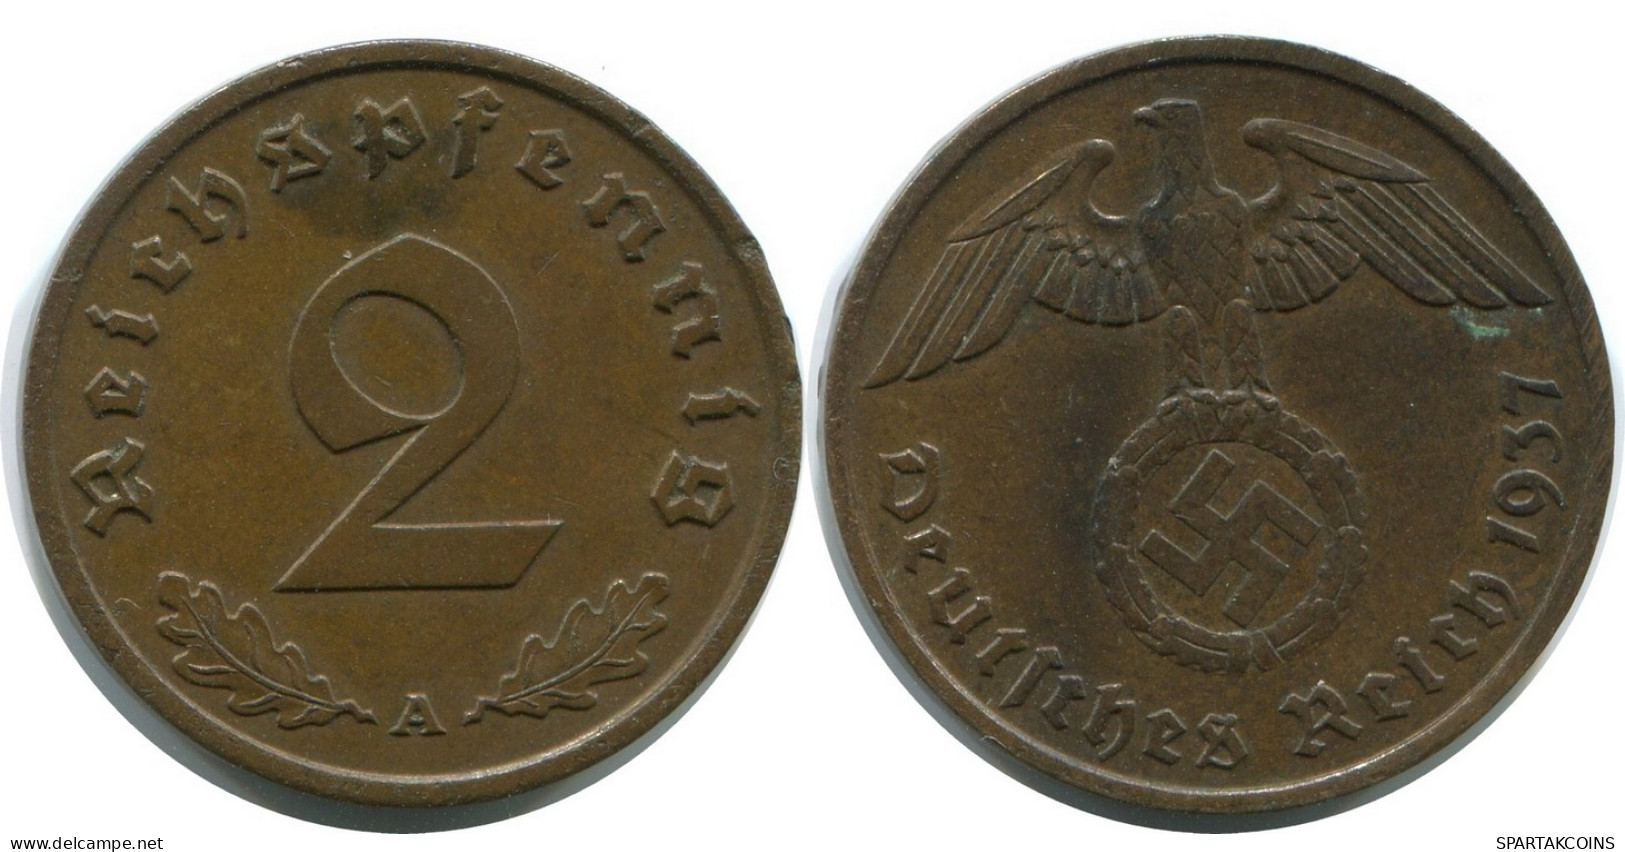 2 REICHSPFENNIG 1937 A GERMANY Coin #AD855.9.U - 2 Rentenpfennig & 2 Reichspfennig